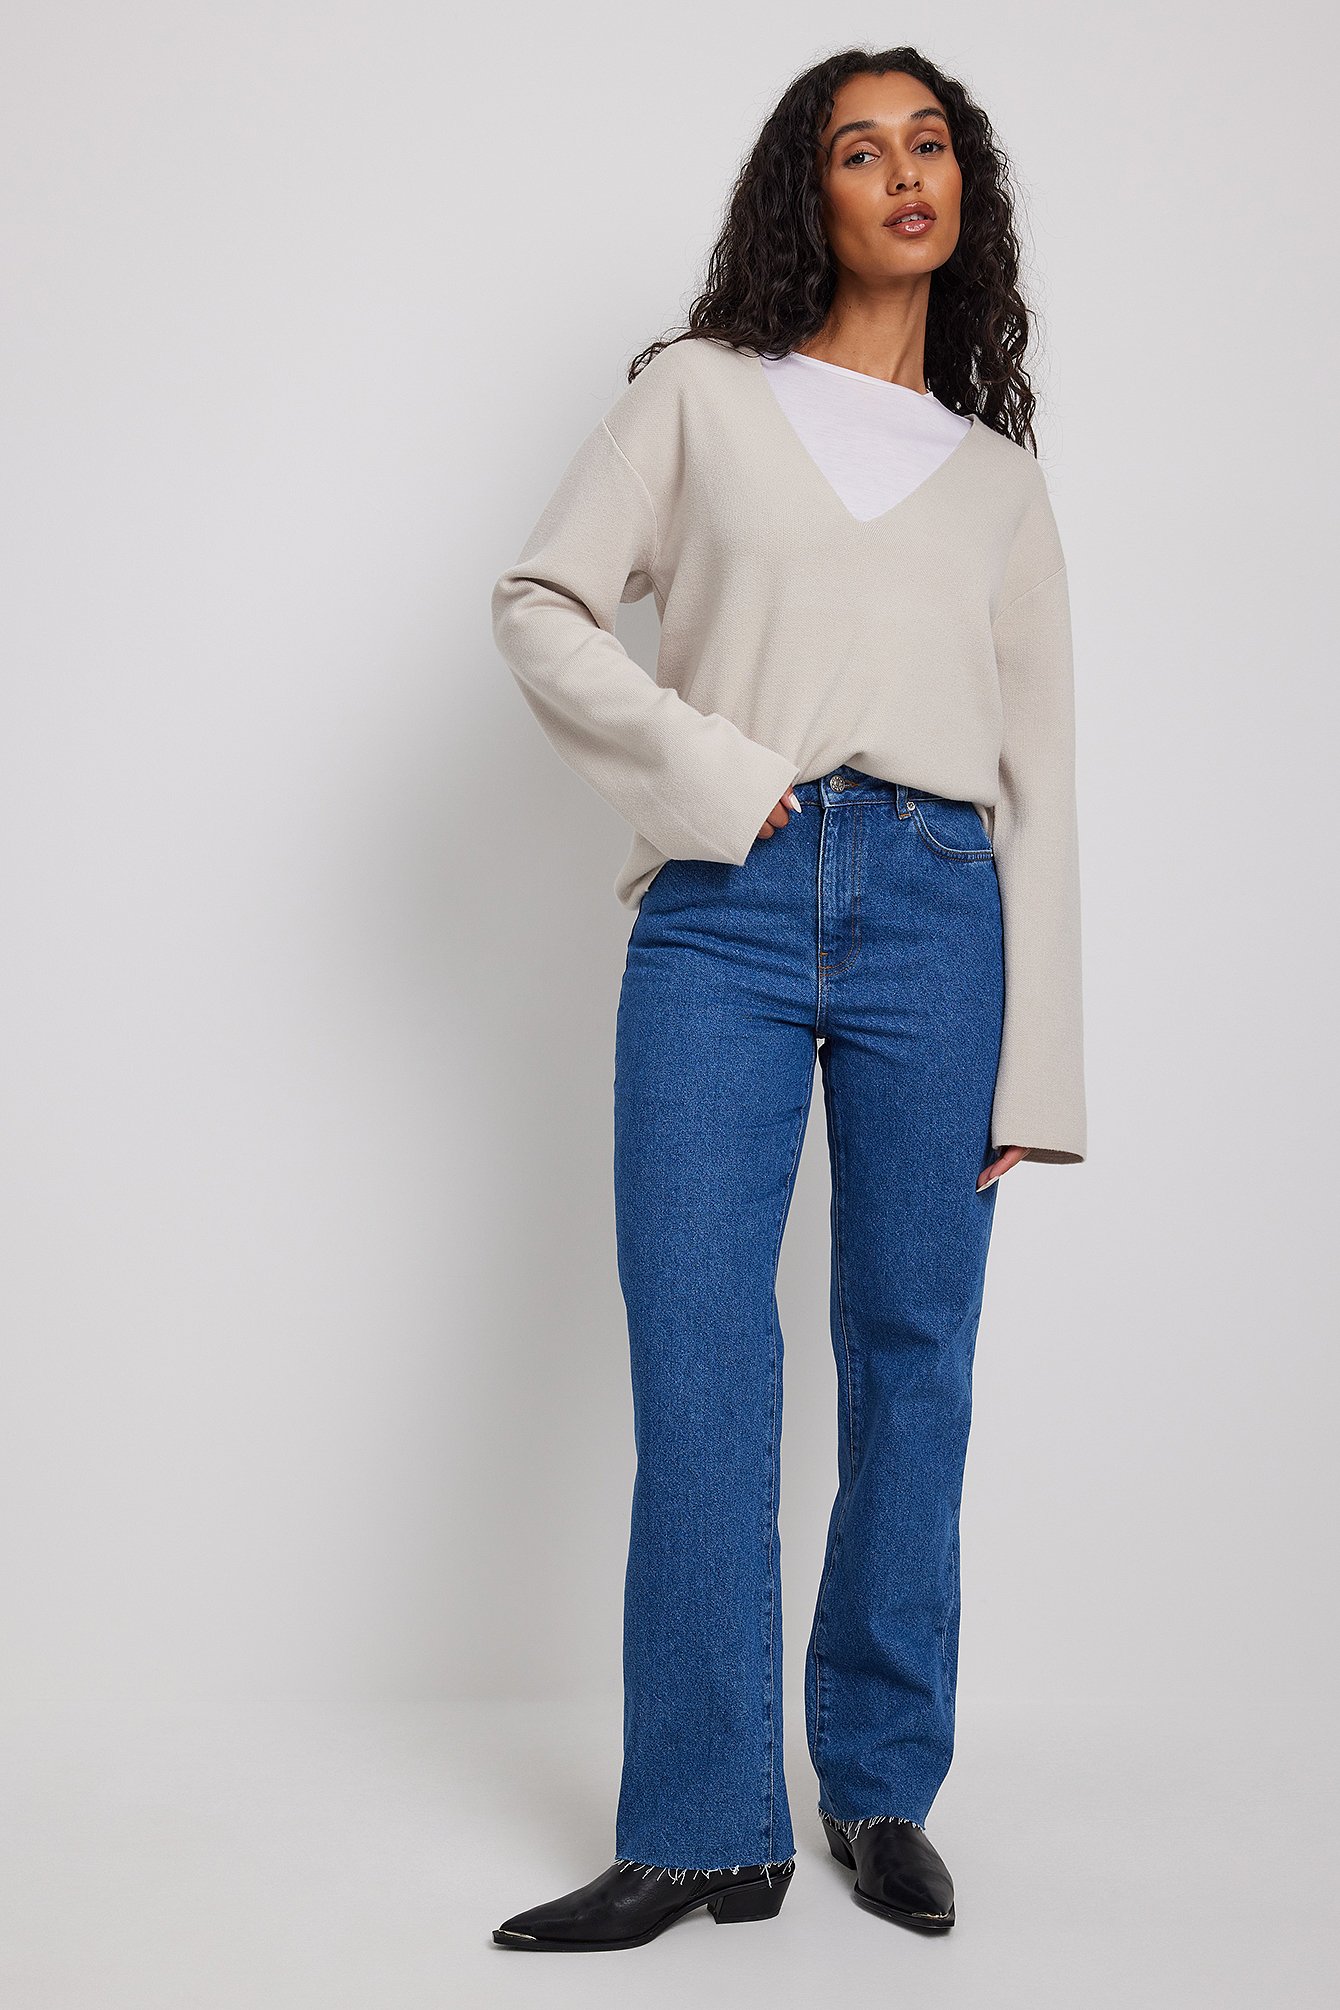 Rianne Meijer x NA-KD Lige jeans med åben hem - Blue